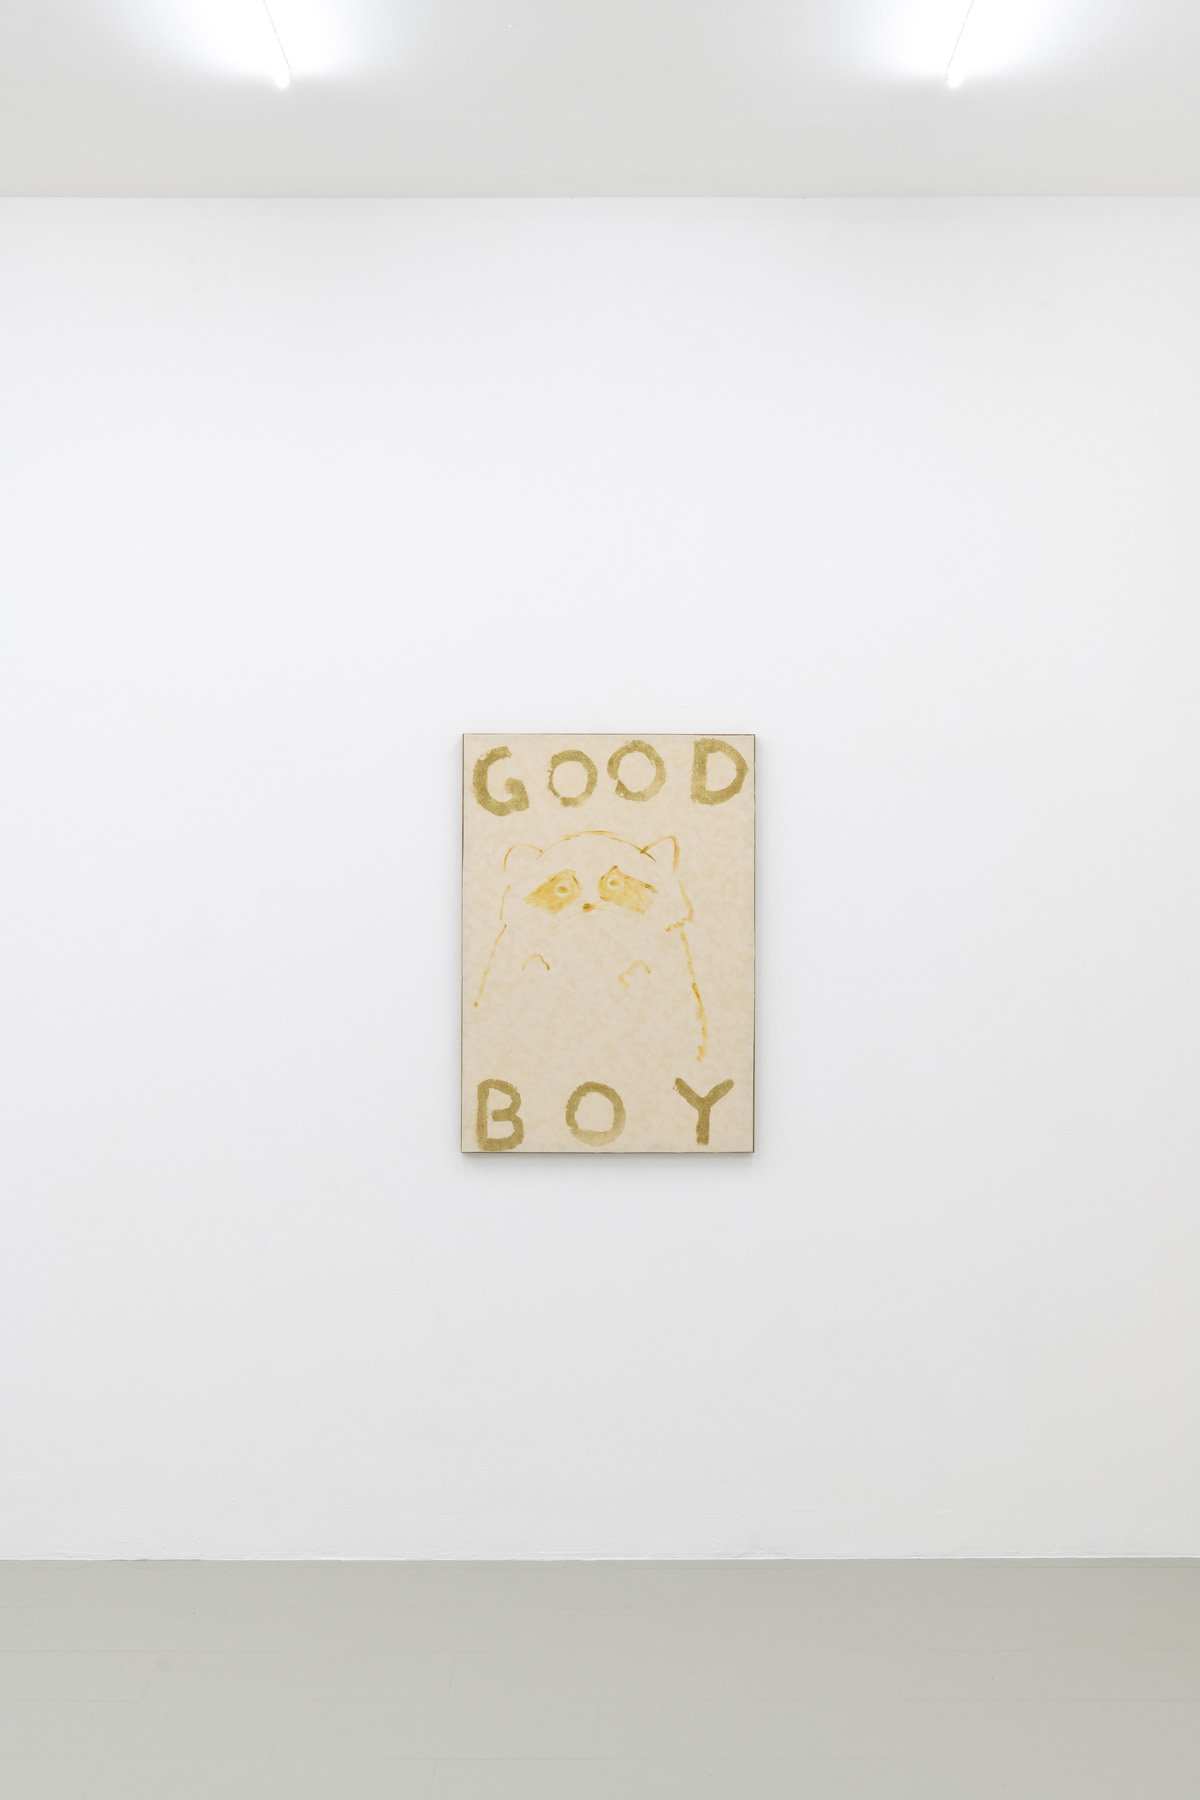 Philipp TimischlGOOD BOY (Seychelles, Ochre, Gold), 2019Velvet on wooden board, oil, glitter100 x 70 x 4 cm